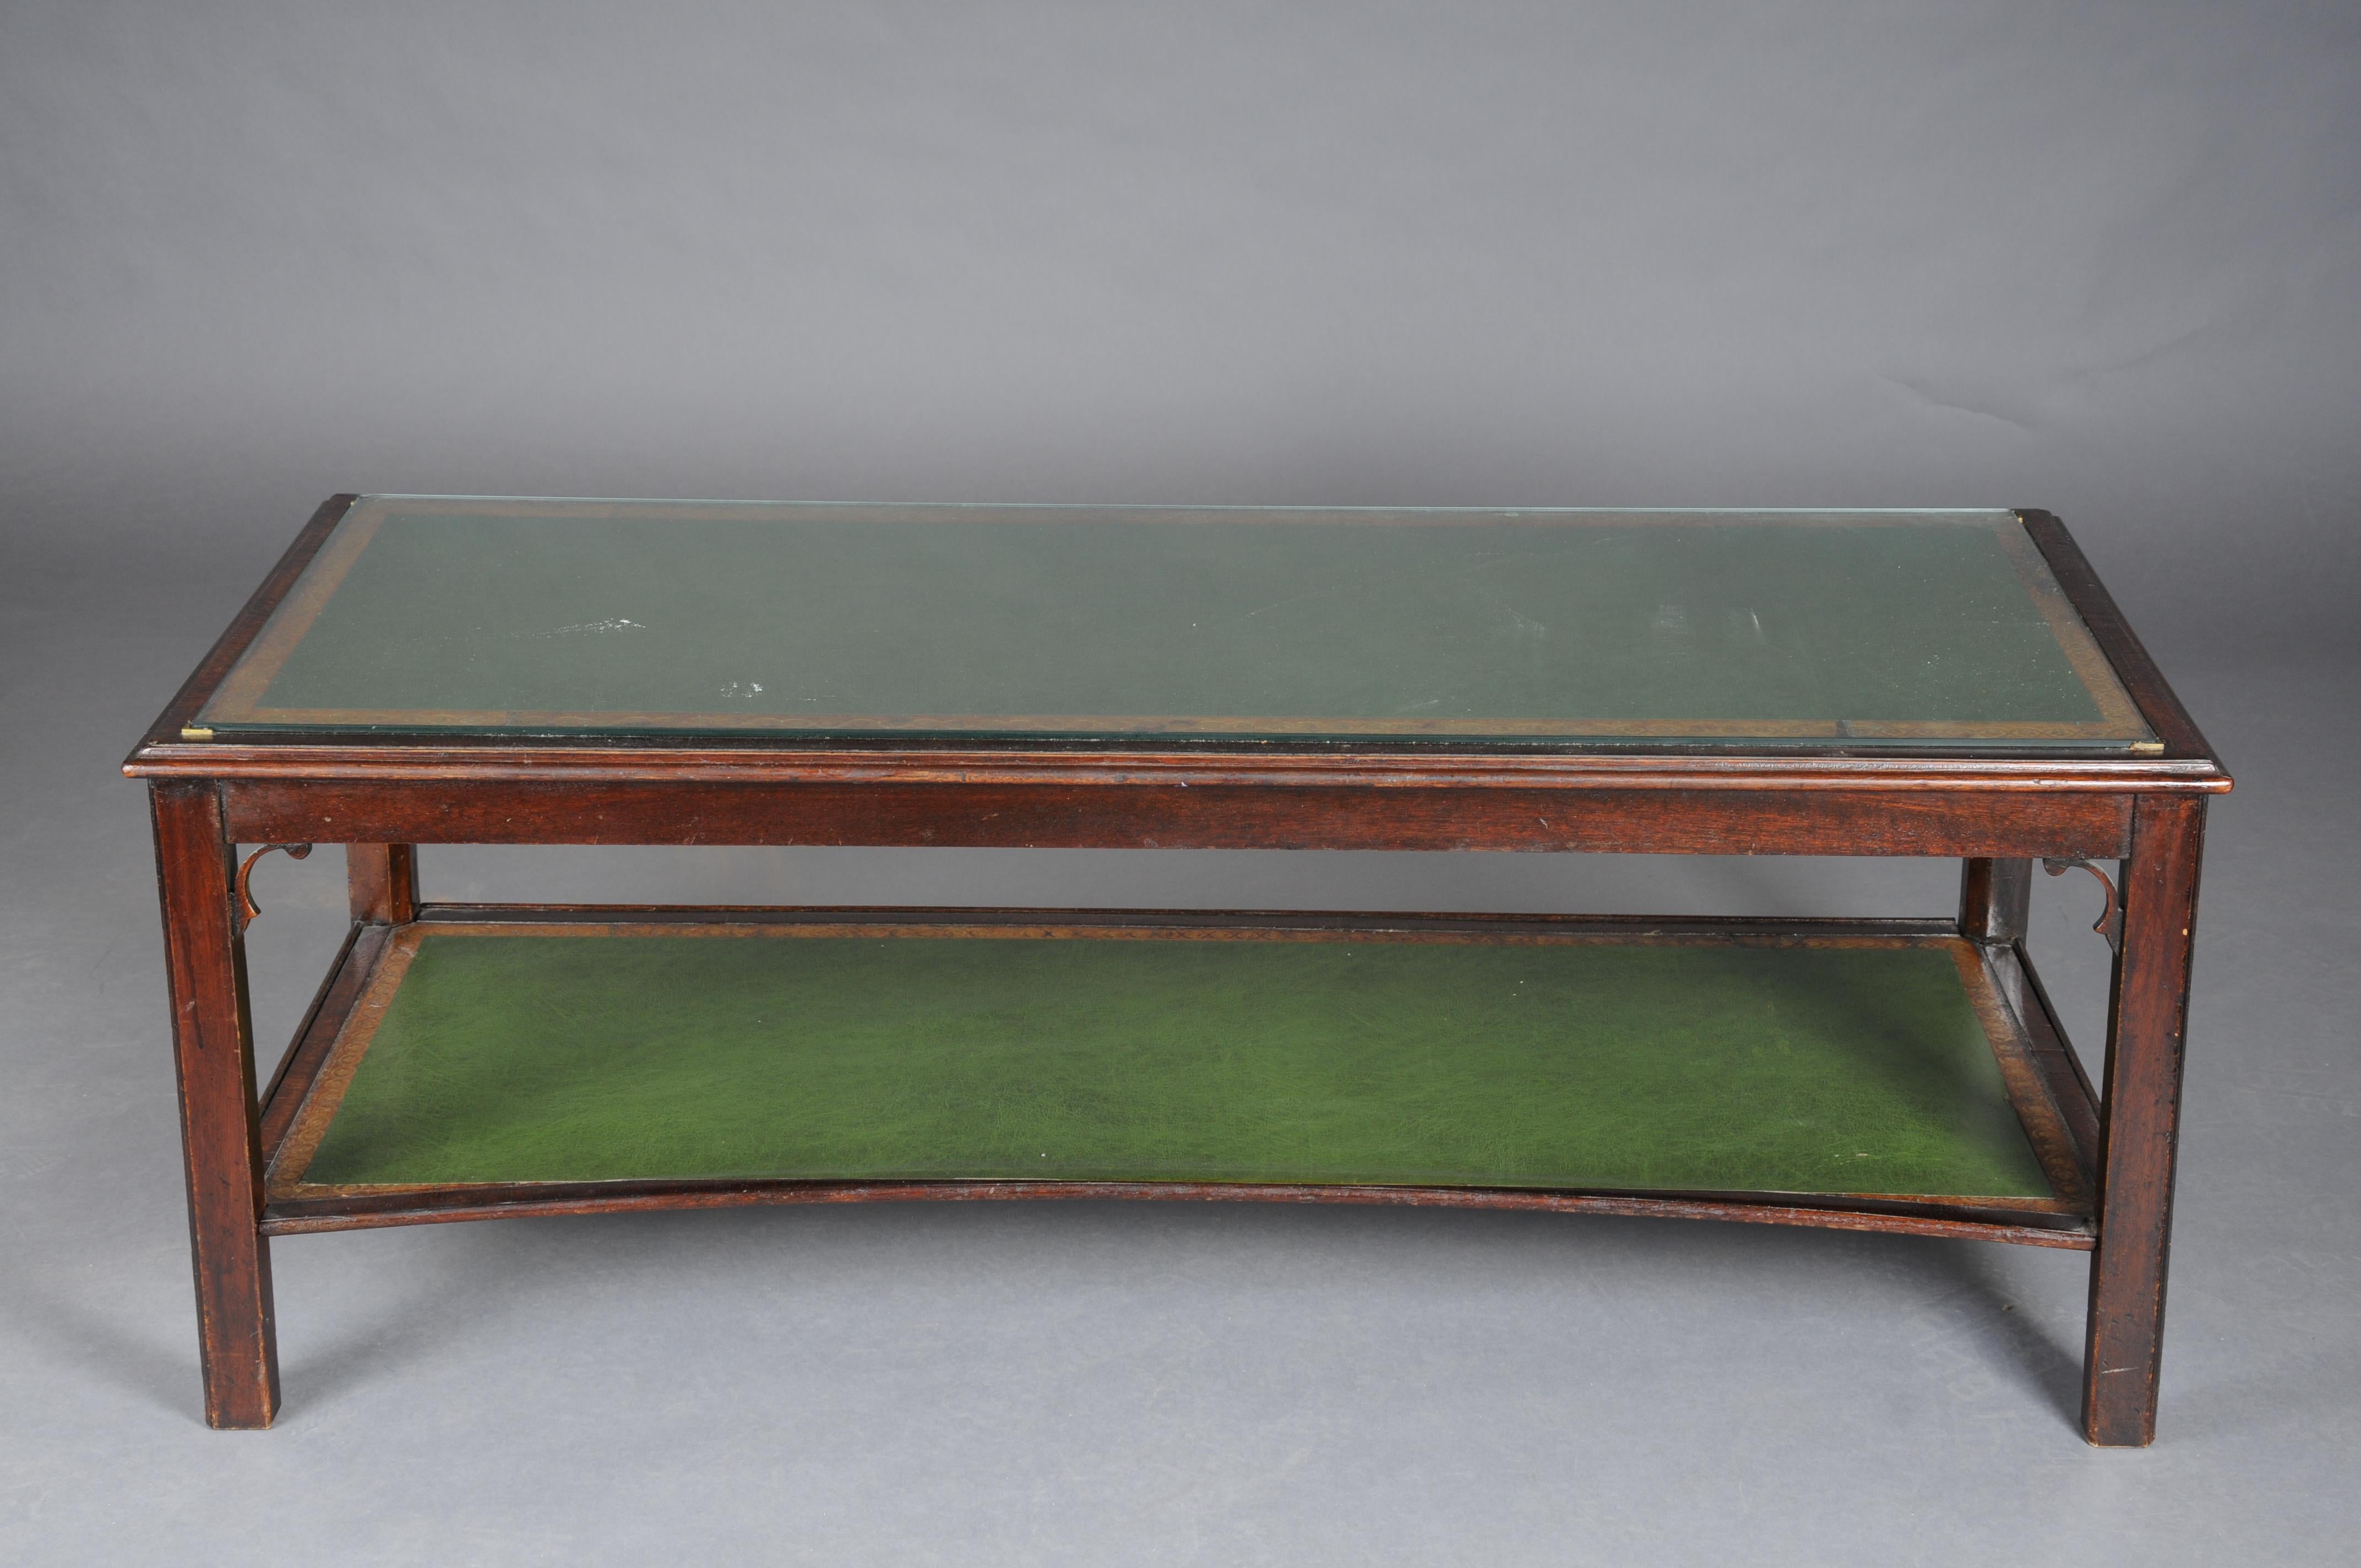 Anfang 20. Jahrhundert Klassizistischer Englischer Couchtisch Lederplatte

Körper aus beweglichem Holz. Teilweise in Mahagoni eingerichtet auf zwei Ebenen. Platte mit einer Glasplatte abdecken.
Bezogen mit grünem Leder.

